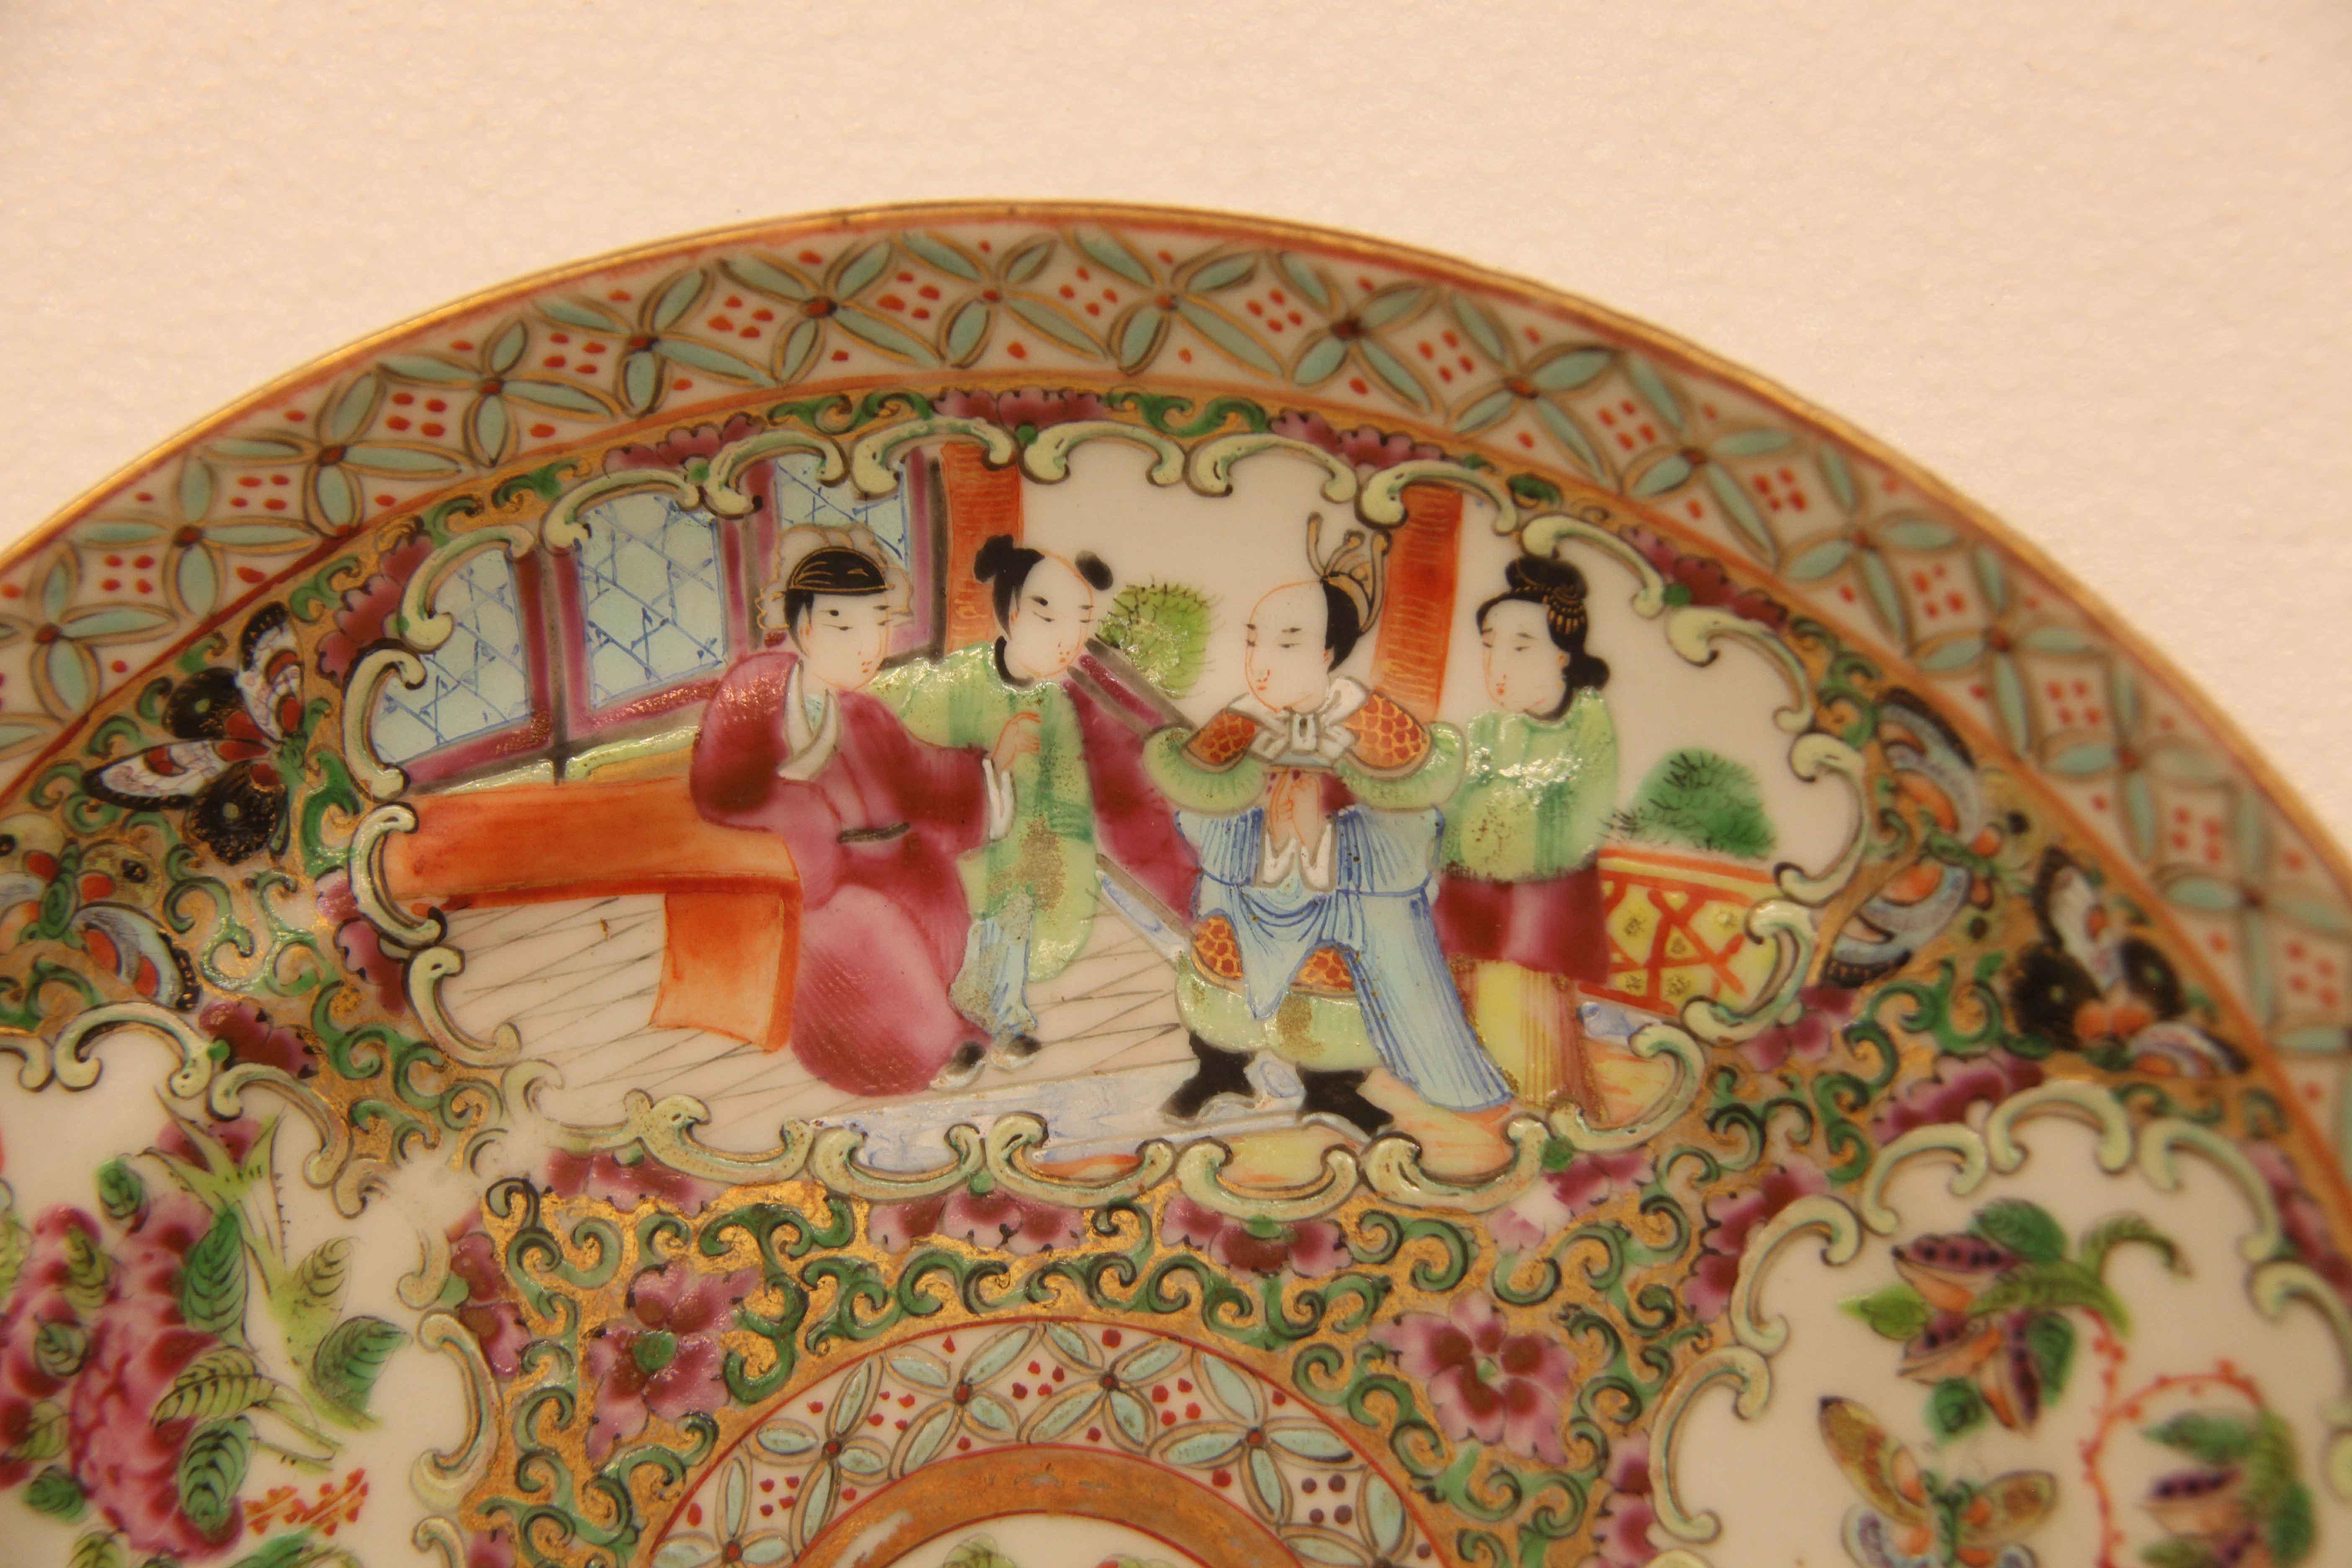 Paire d'assiettes chinoises à médaillon rose, le bord est orné de fleurs stylisées de couleur turquoise claire, l'intérieur présente des panneaux alternés séparés par des fleurs et des papillons de couleur rose, un panneau avec quatre femmes,